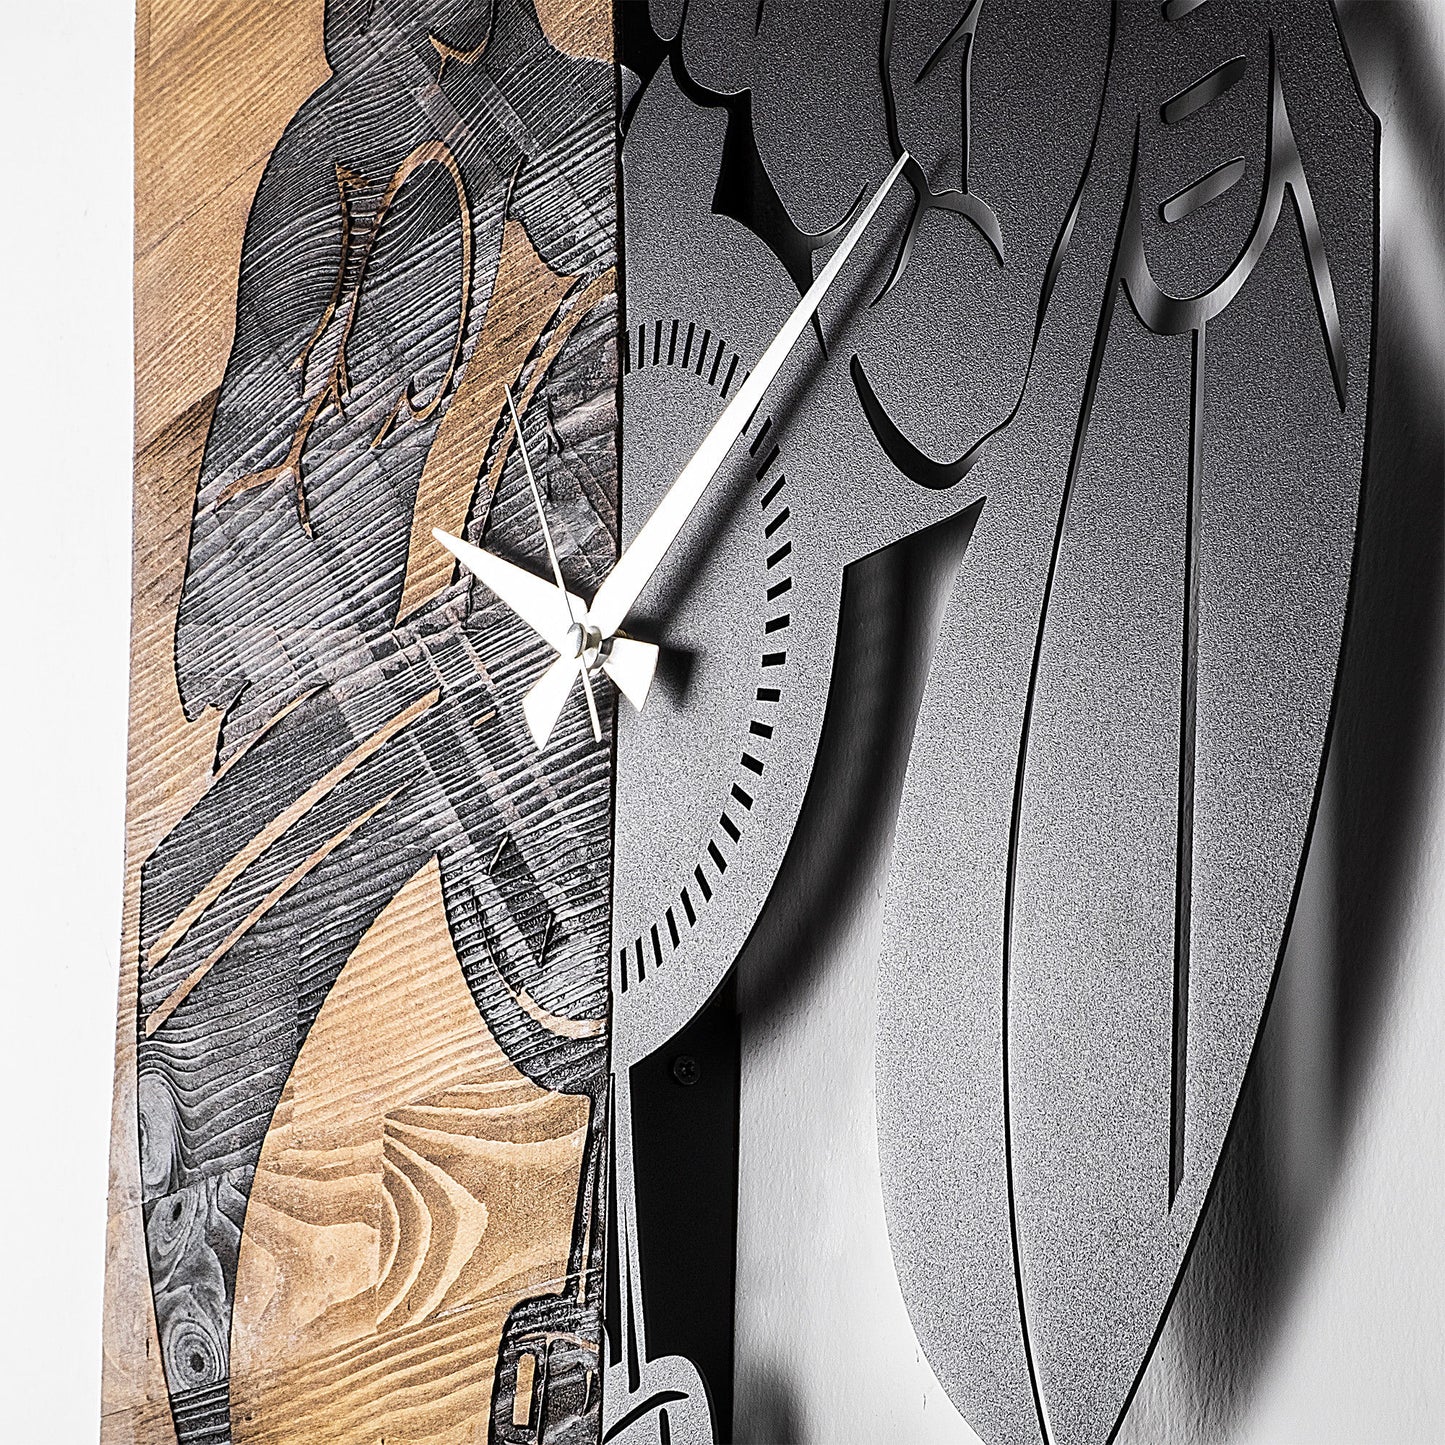 Wooden Clock 20 - Decorative Wooden Wall Clock